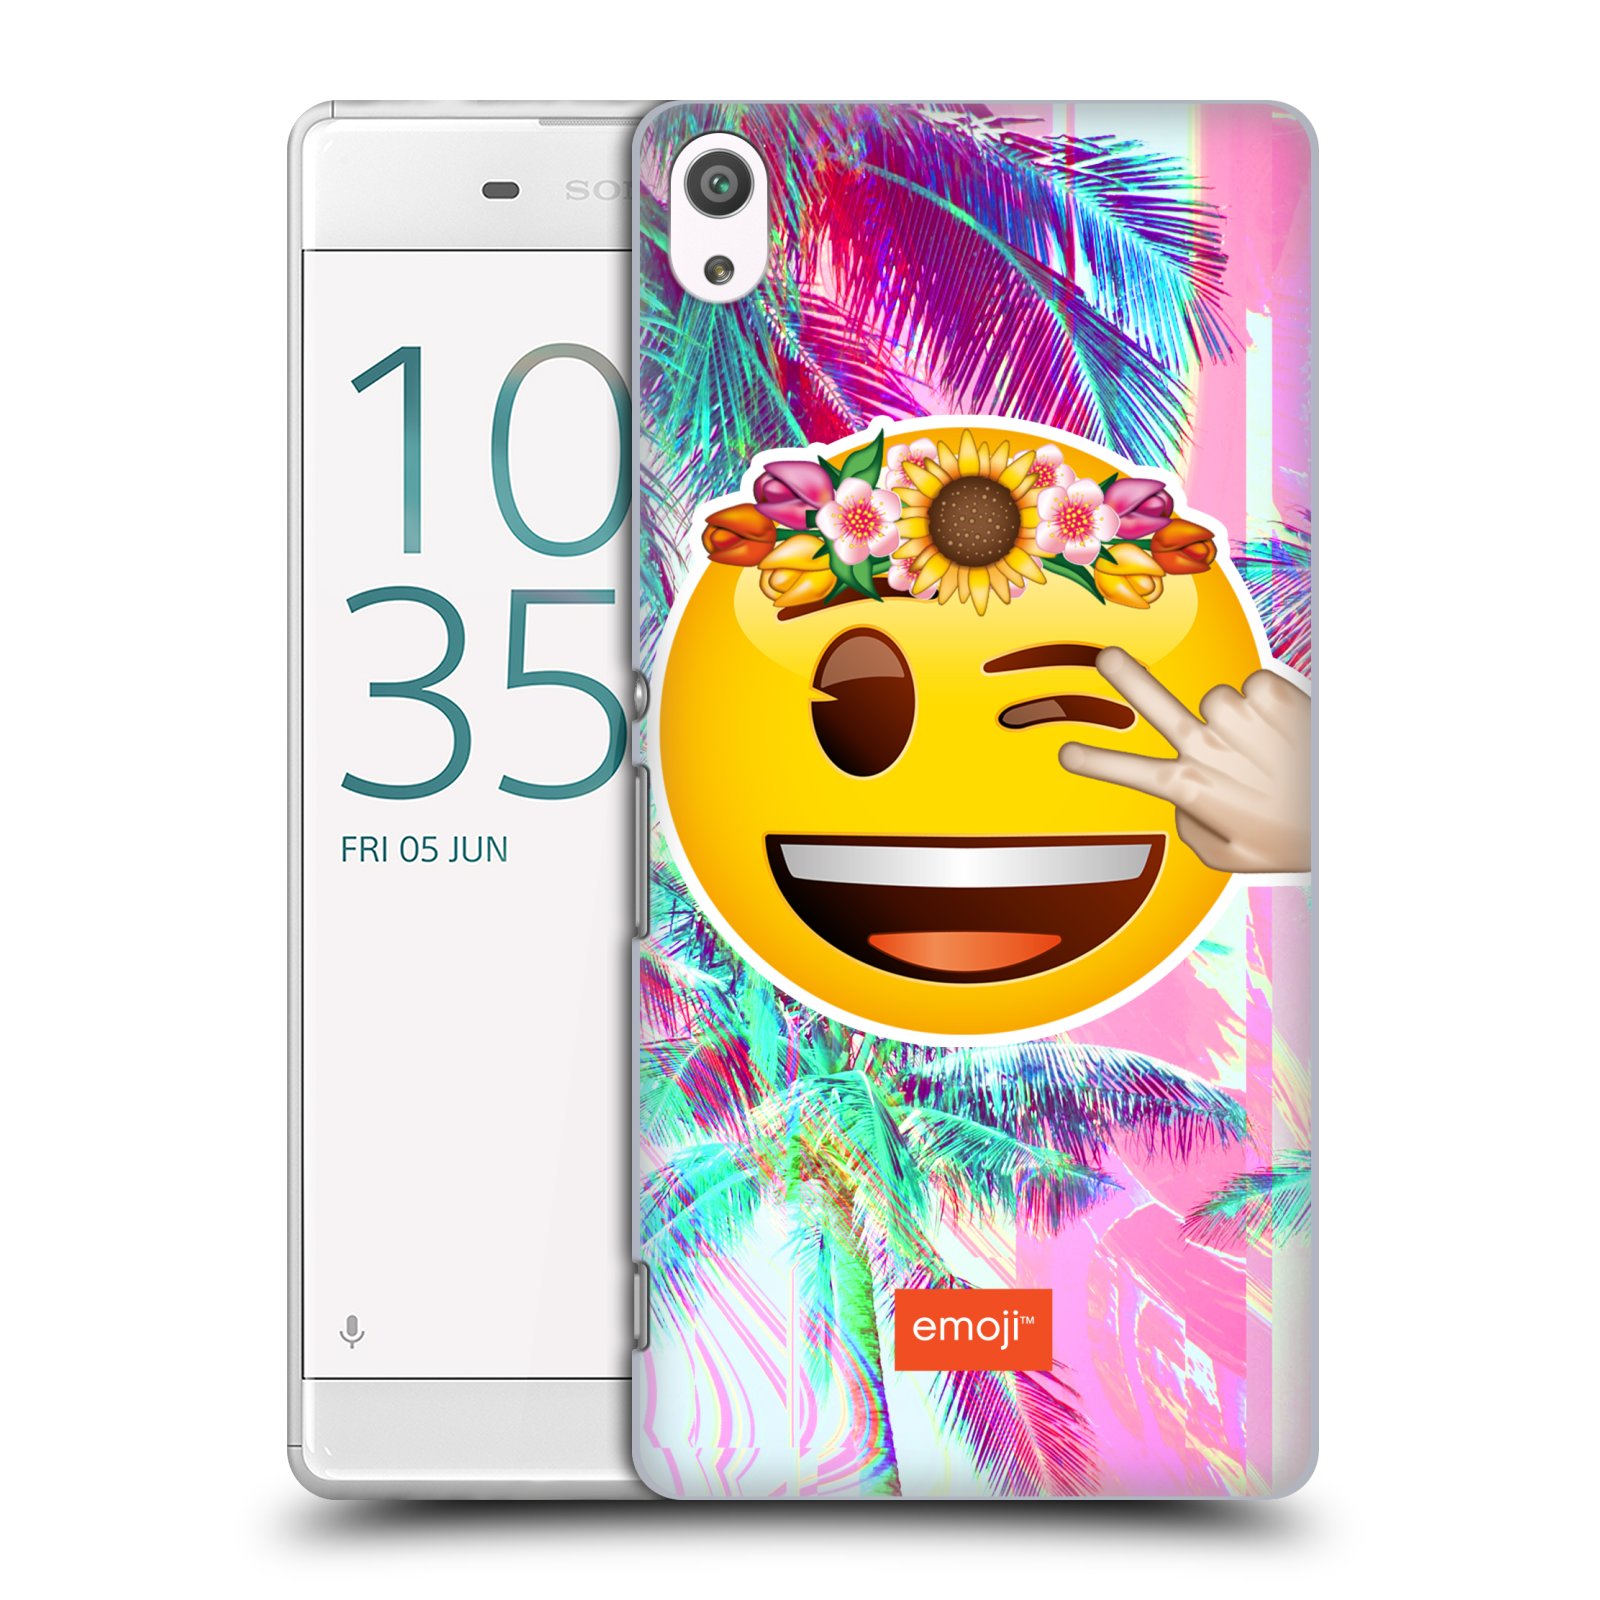 Pouzdro na mobil Sony Xperia XA ULTRA - HEAD CASE - Emoji smajlík palmy a květiny